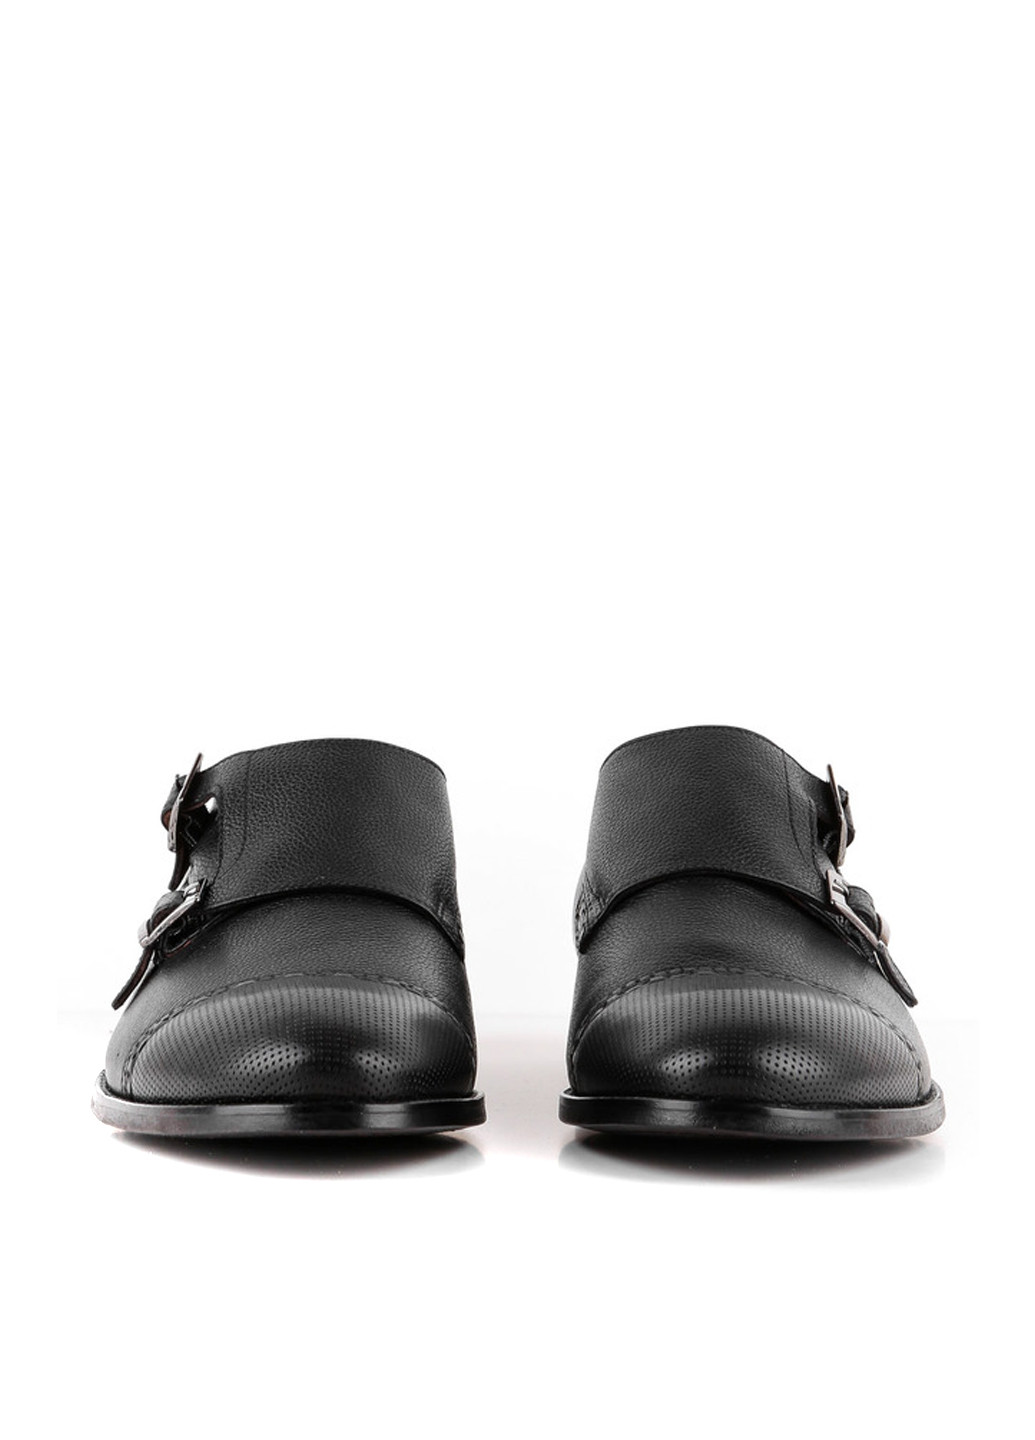 Черные классические туфли Le'BERDES с ремешком